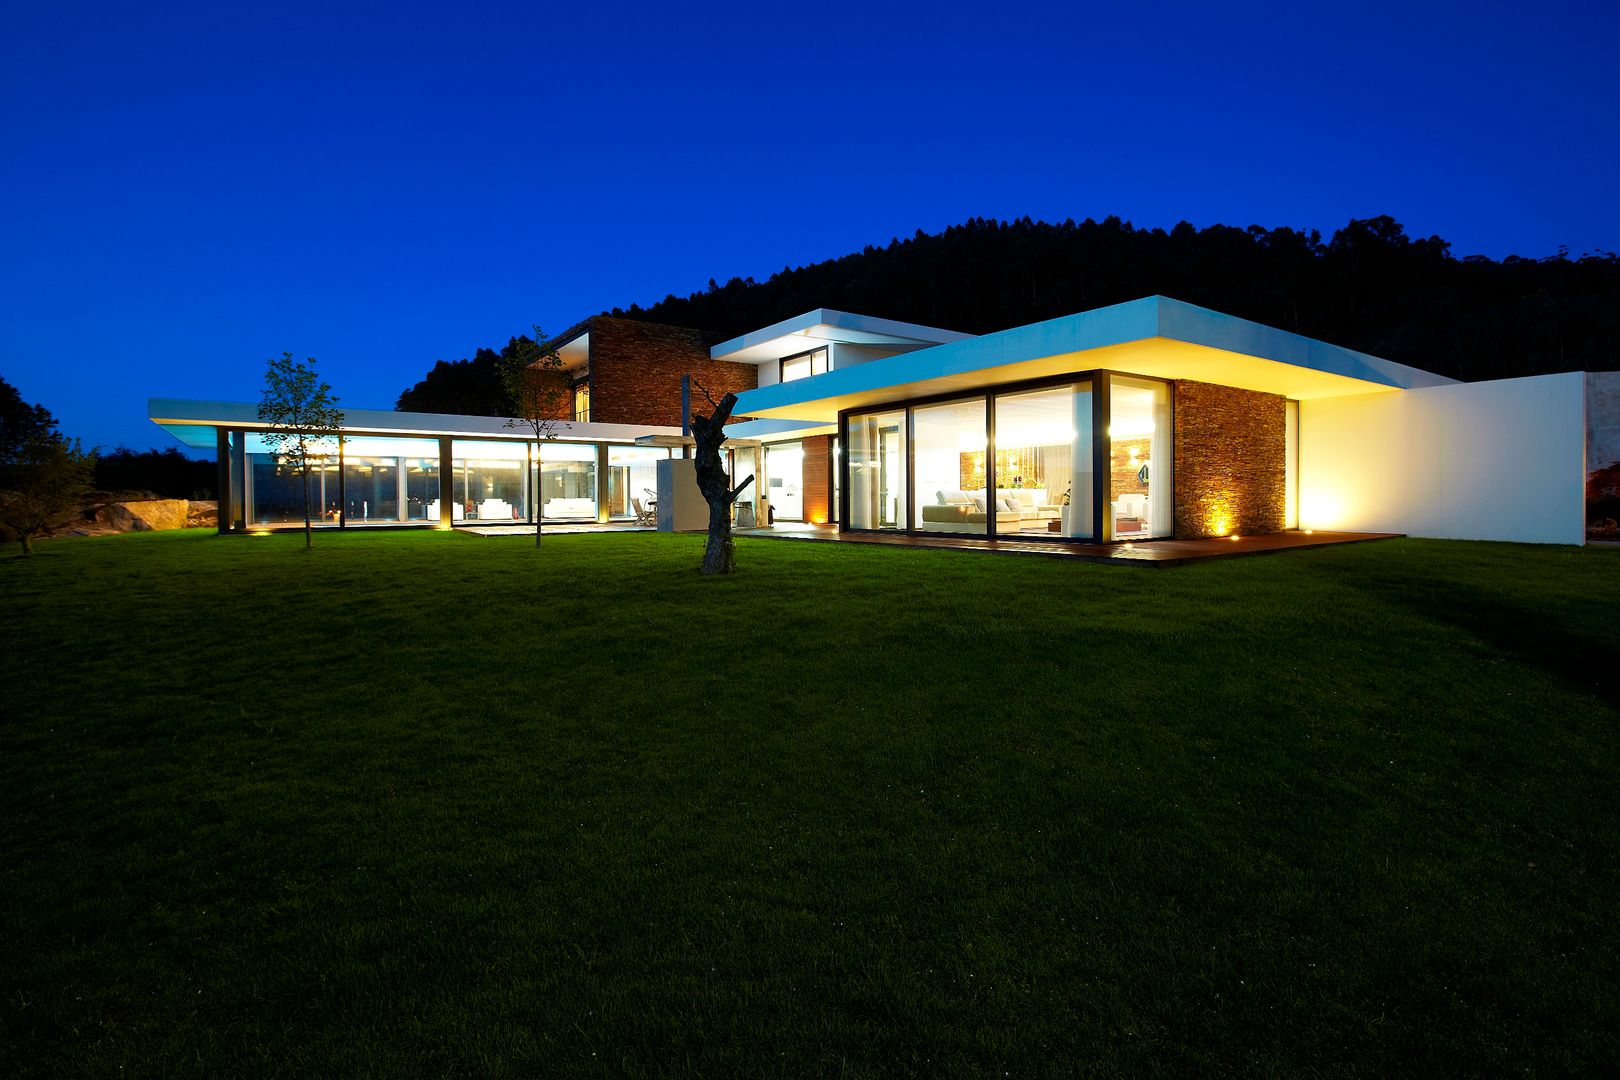 Casa moderna de dimensões generosas e piscina interior, Risco Singular - Arquitectura Lda Risco Singular - Arquitectura Lda Minimalistyczne domy